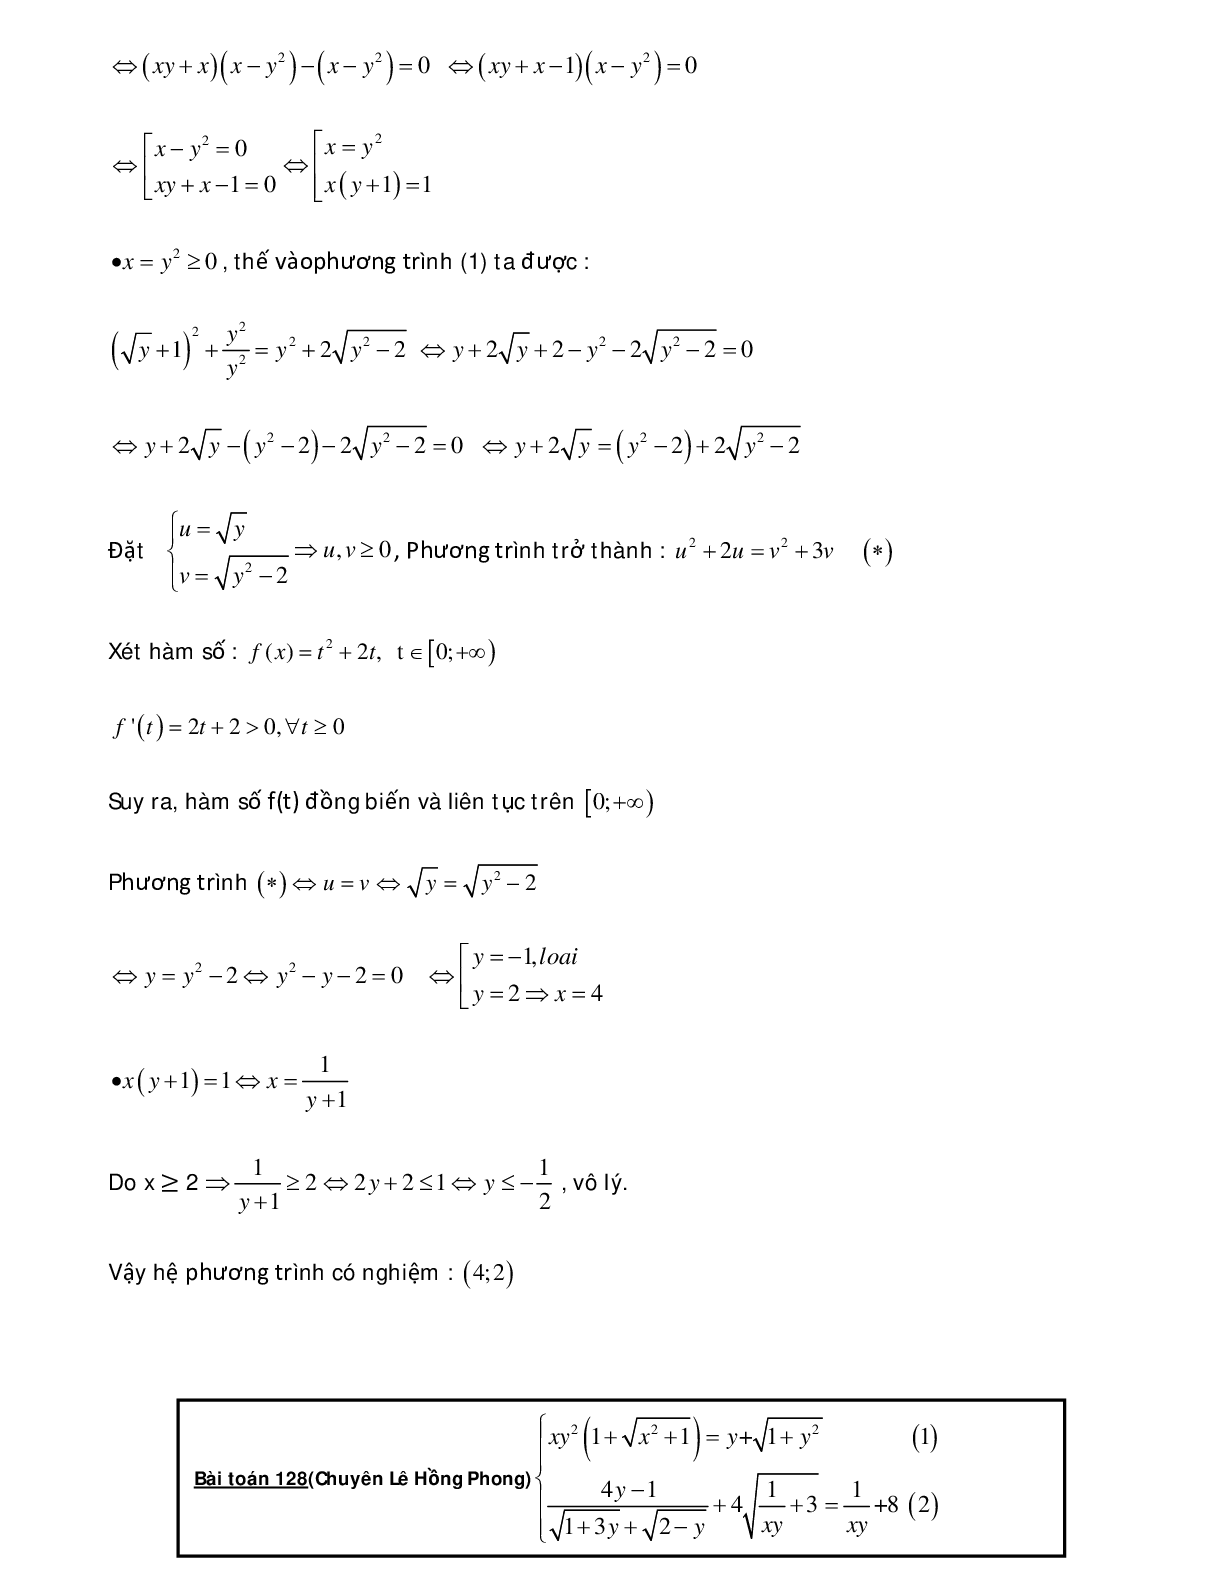 Bài tập sử dụng phương pháp hàm số để giải hệ phương trình - có đáp án chi tiết (trang 10)